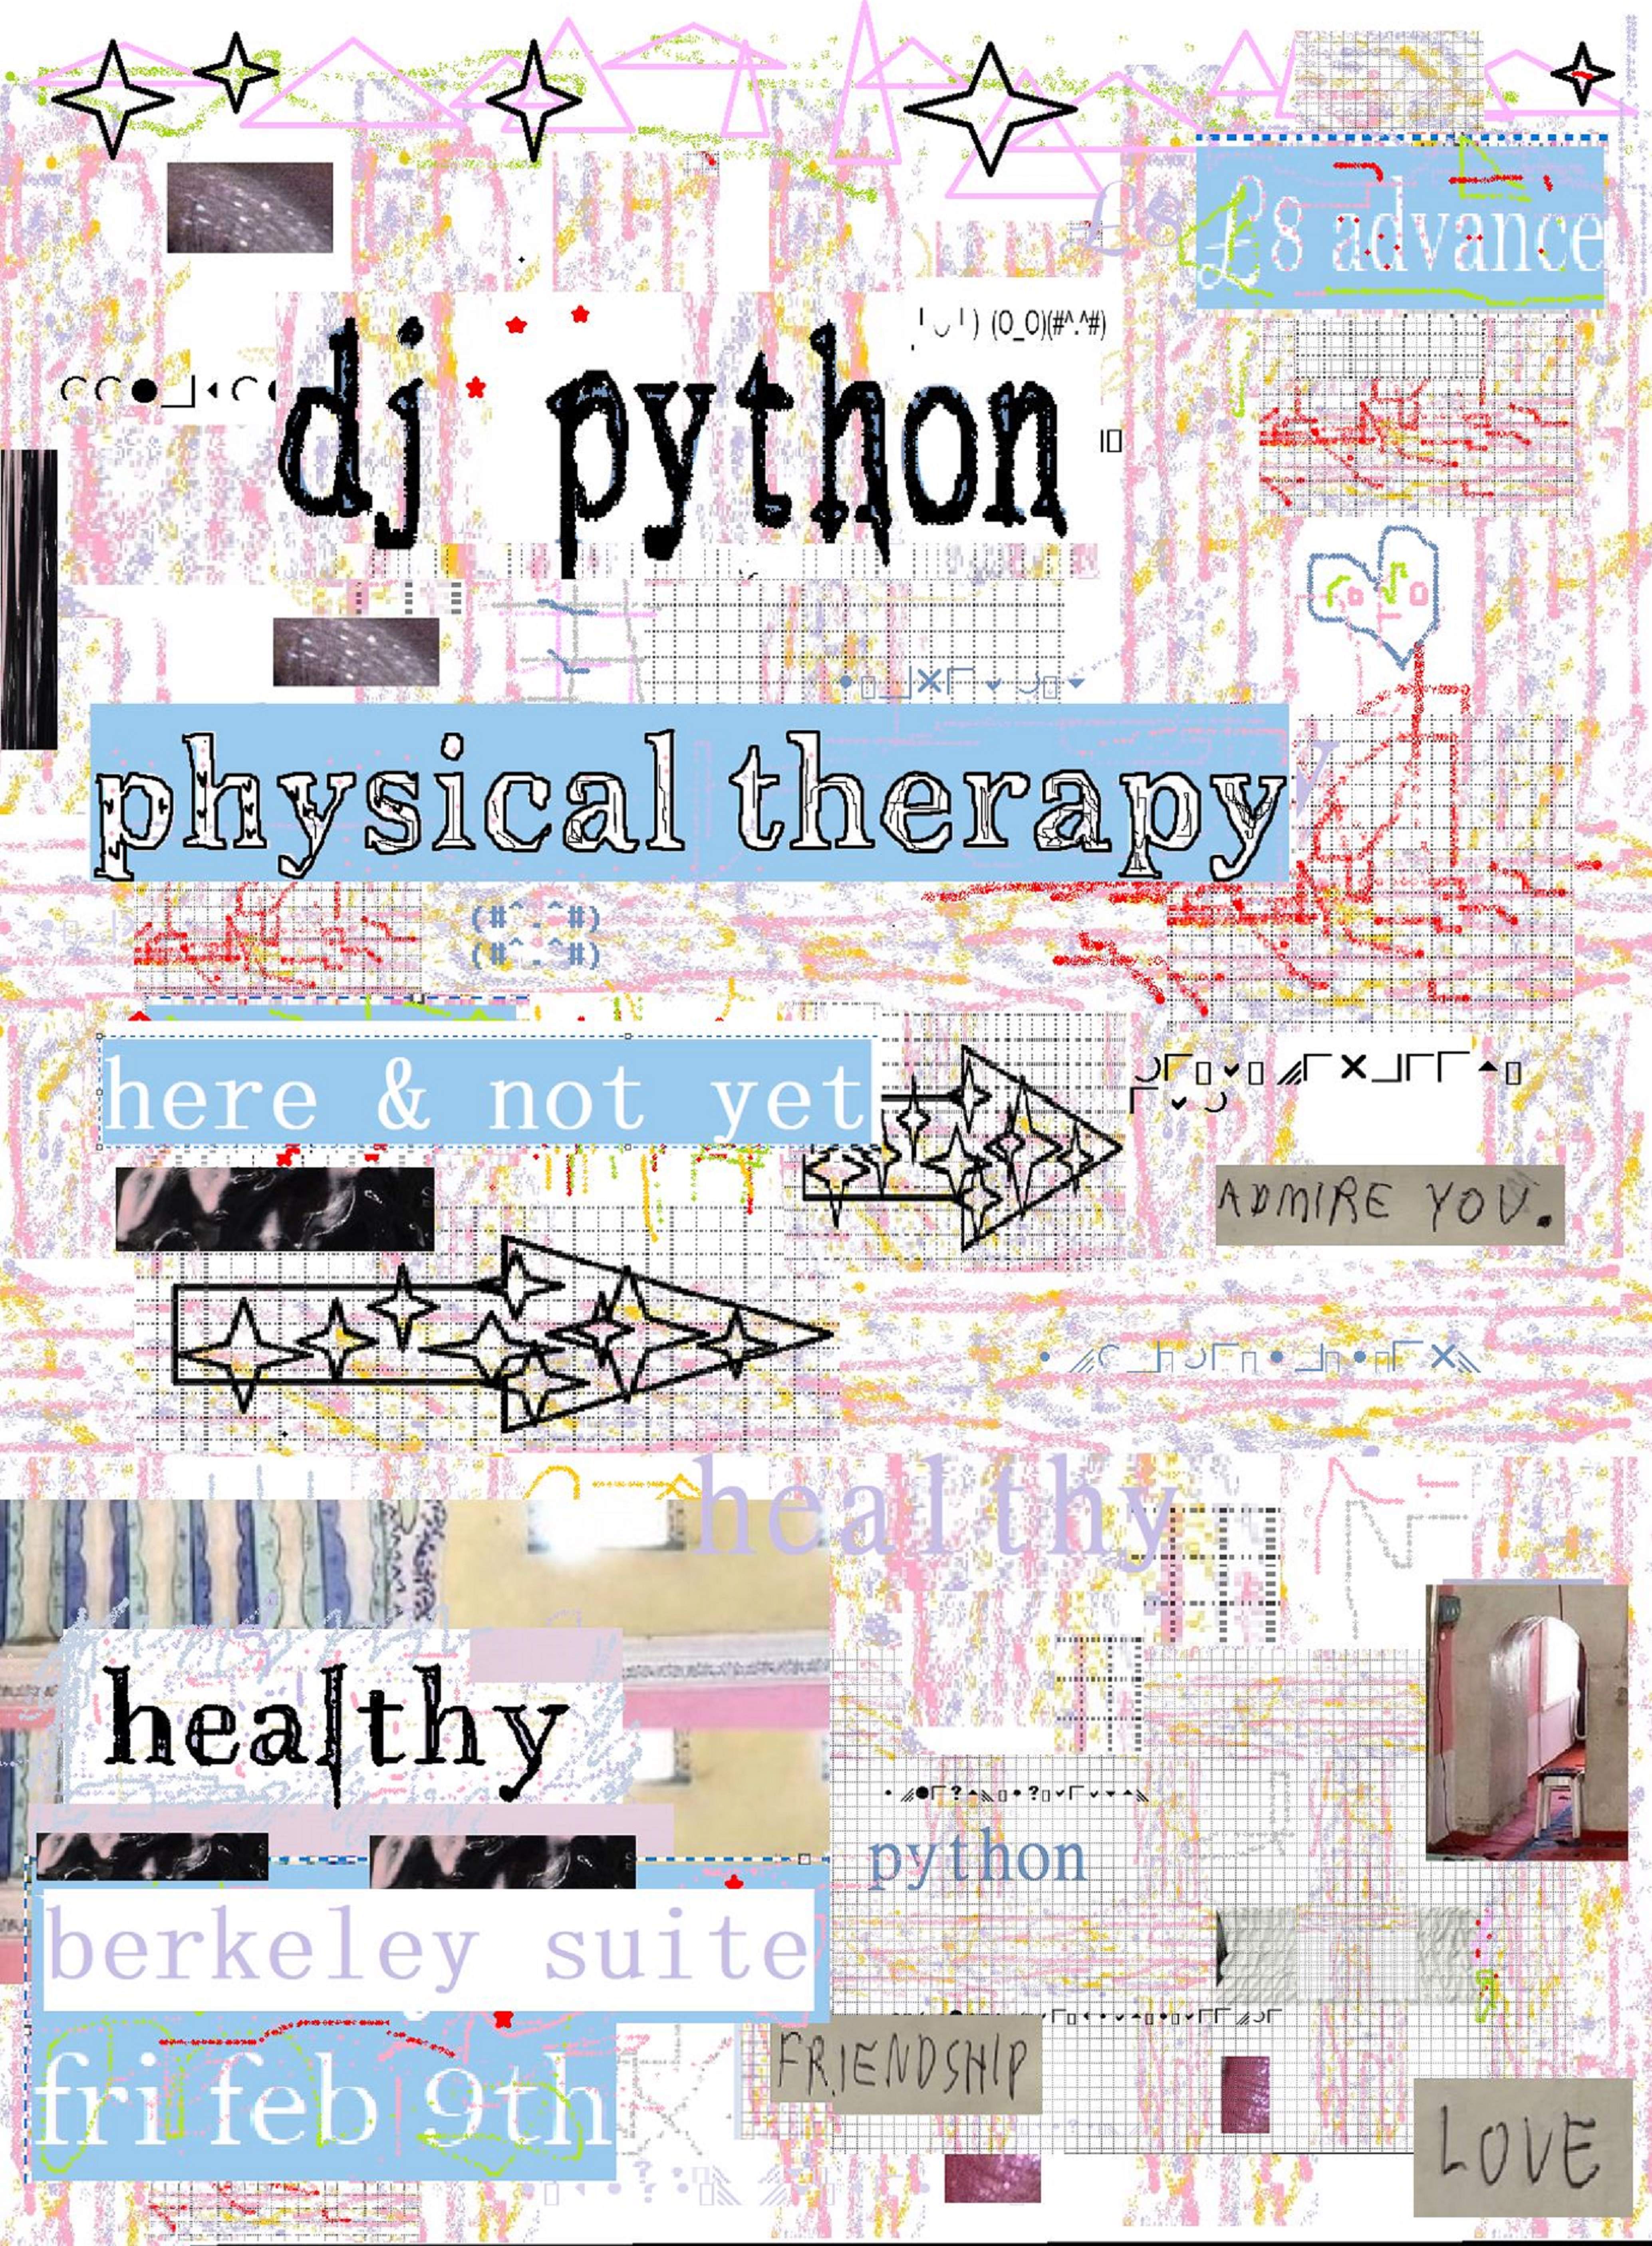 HEALTHY w DJ Python 4 hr set + here & not yet - フライヤー表